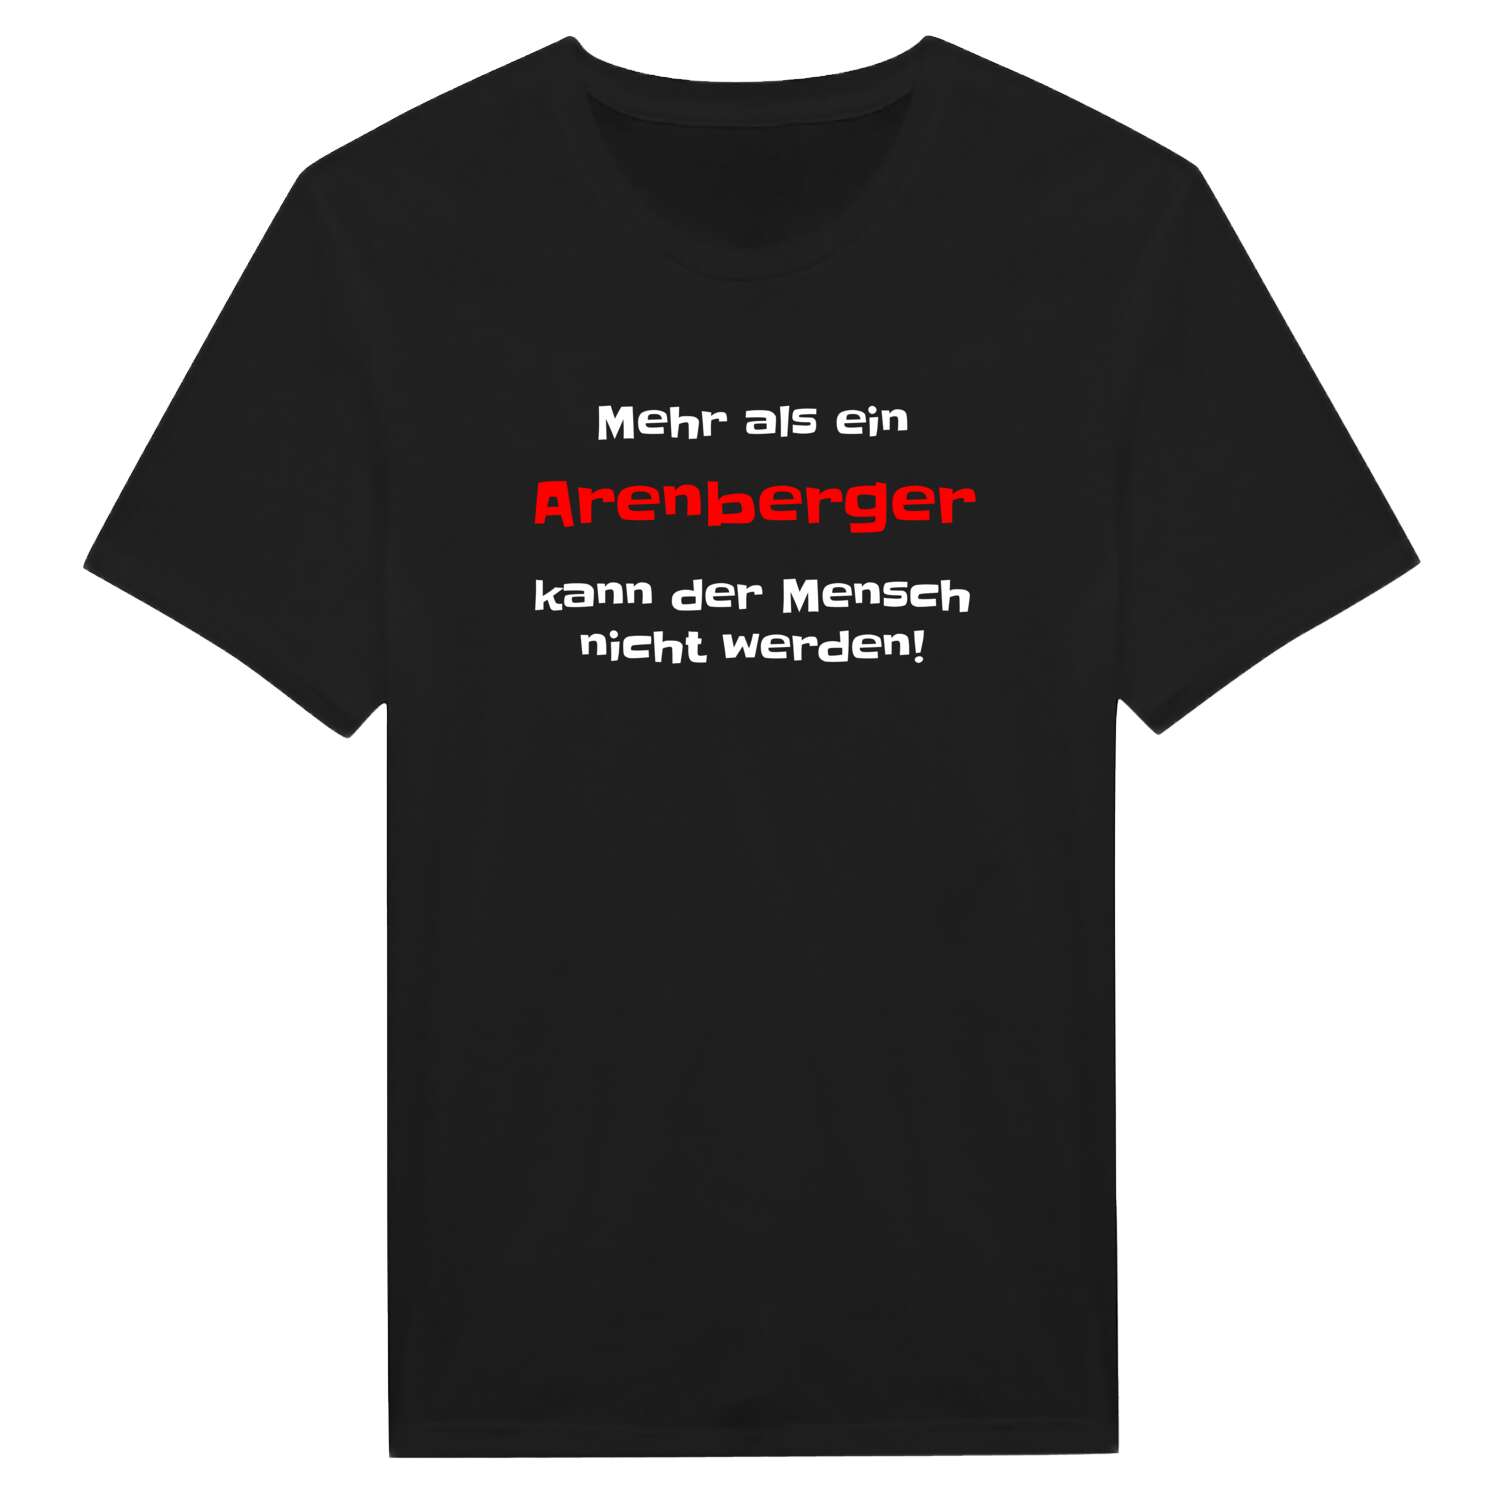 Arenberg T-Shirt »Mehr als ein«